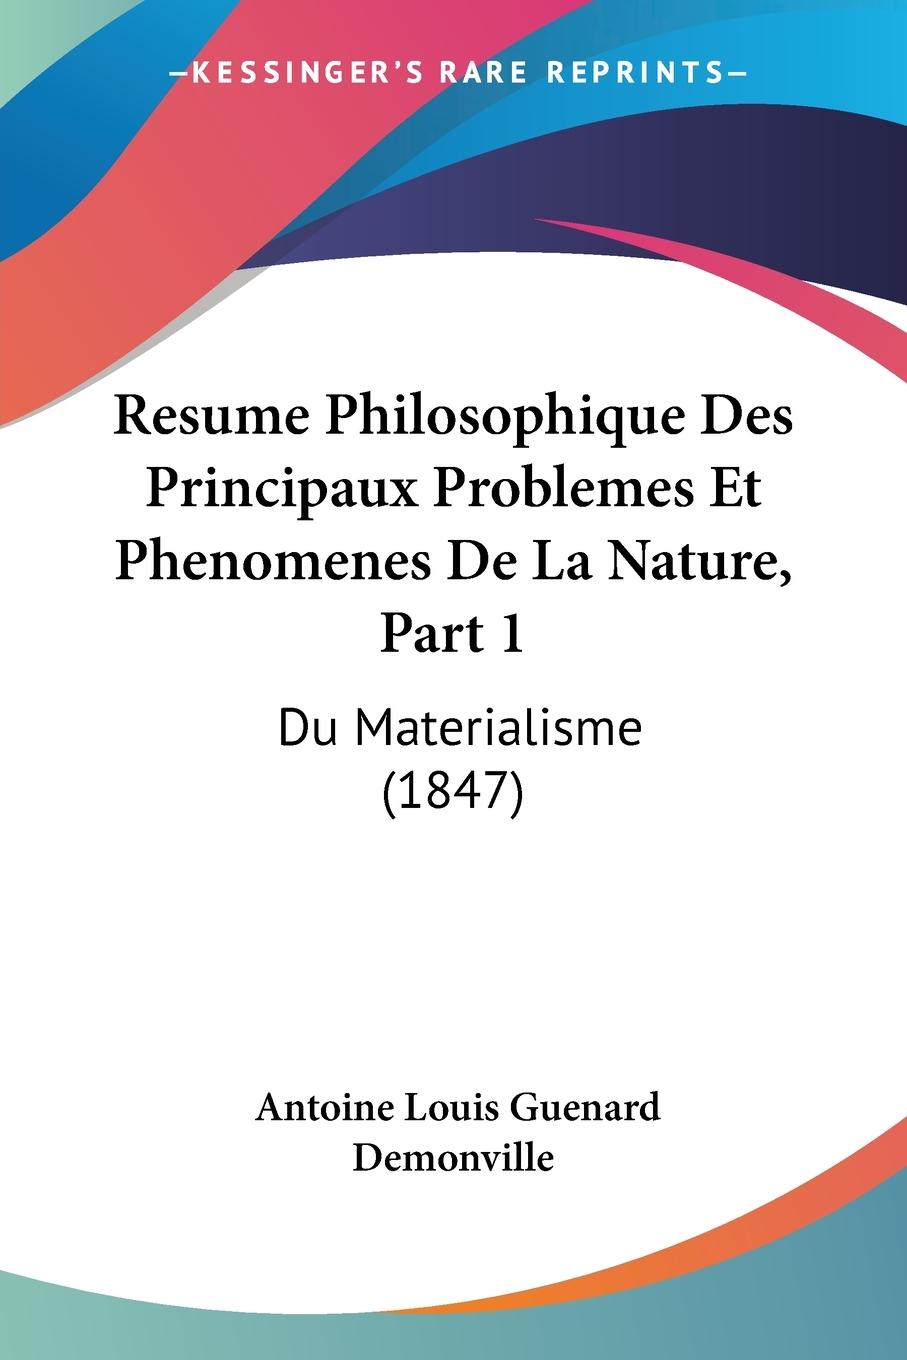 Resume Philosophique Des Principaux Problemes Et Phenomenes De La Nature, Part 1 - Demonville, Antoine Louis Guenard